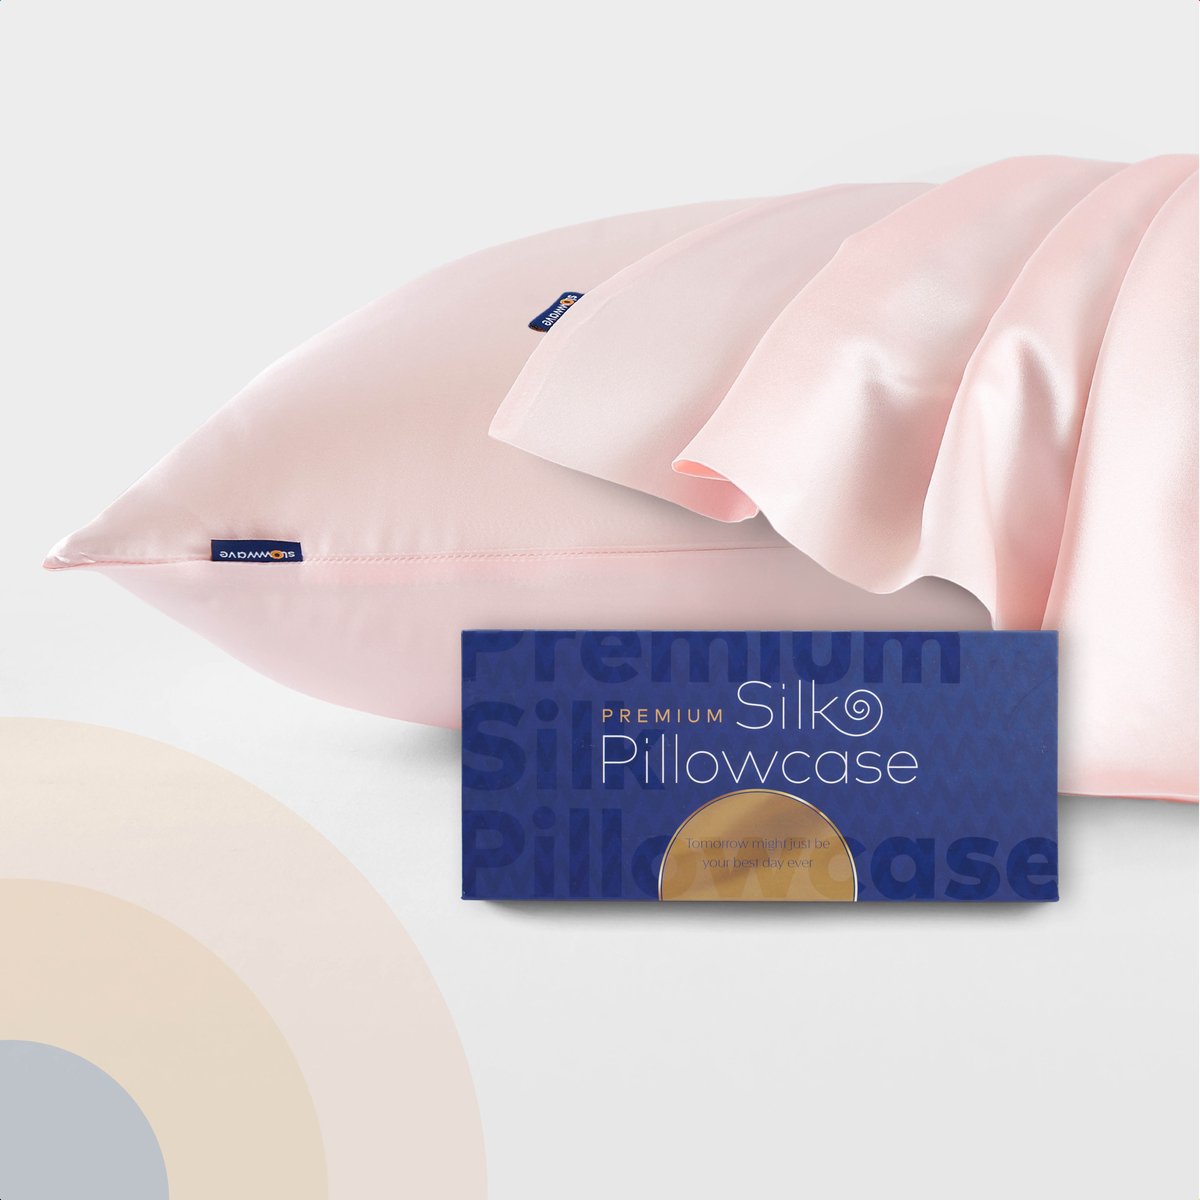 Slowwave Premium Silk Pillowcase - Kleur: Cherry Blossom (roze) - Limited edition - Ervaar het beste zijden kussensloop - 100% Mulberry zijde - 22 momme - Hoogste kwaliteit (grade 6A) - 60x70cm